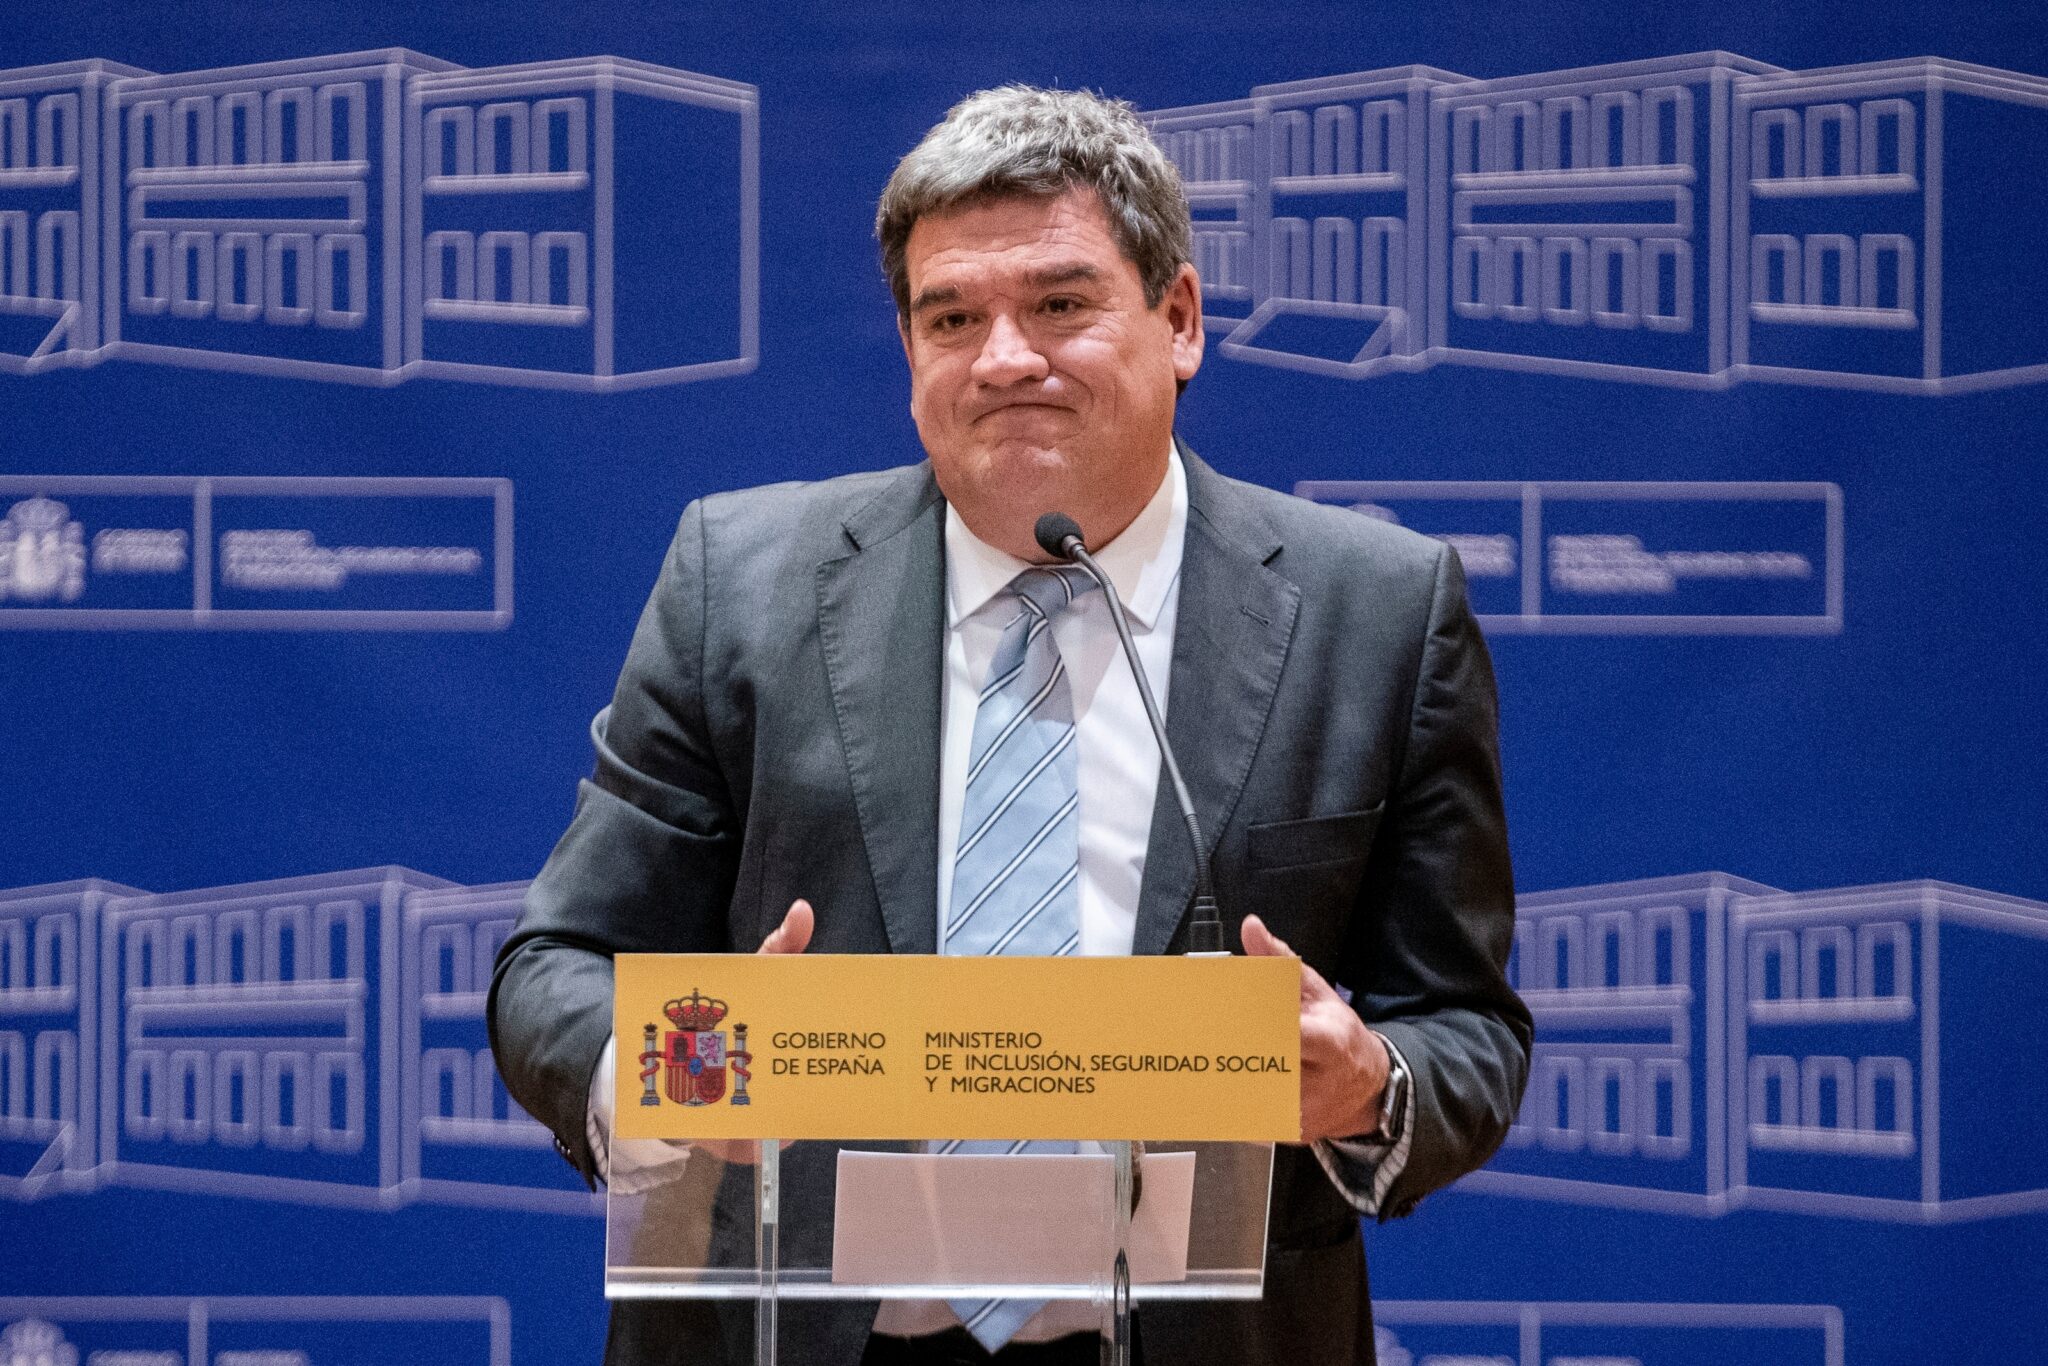 El ministro de Inclusión, Seguridad Social y Migraciones, José Luis Escrivá, interviene en el acto